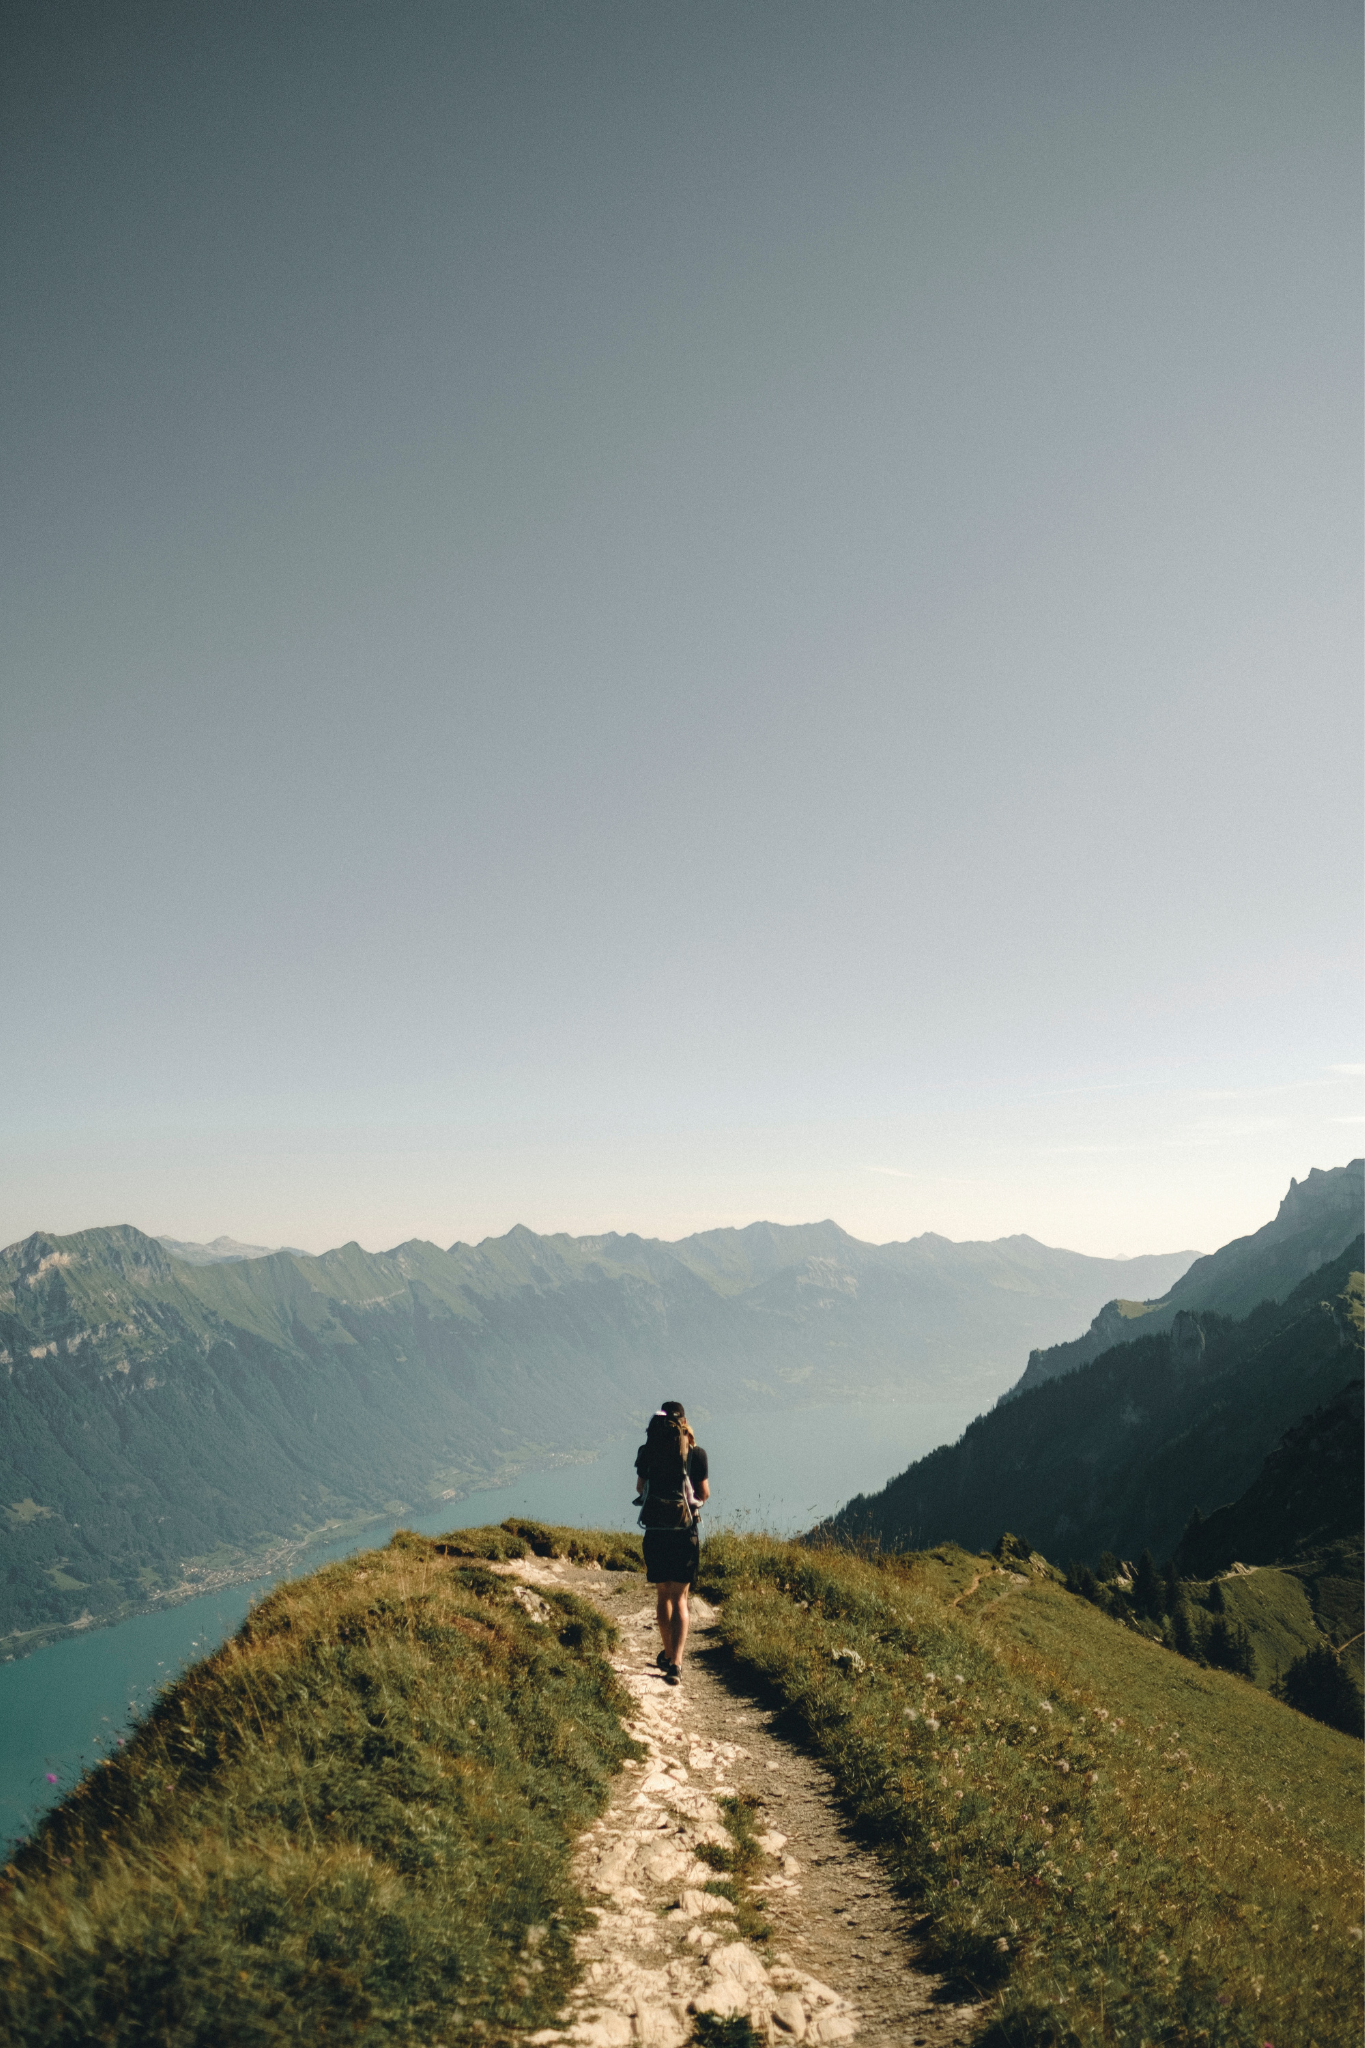 Zu sehen ist eine Person, die bei sonnigem Wetter auf einem Bergrücken wandert. Im Hintergrund zu sehen ist ein weiter Ausblick mit einer Gebirgskette und einem Fluss